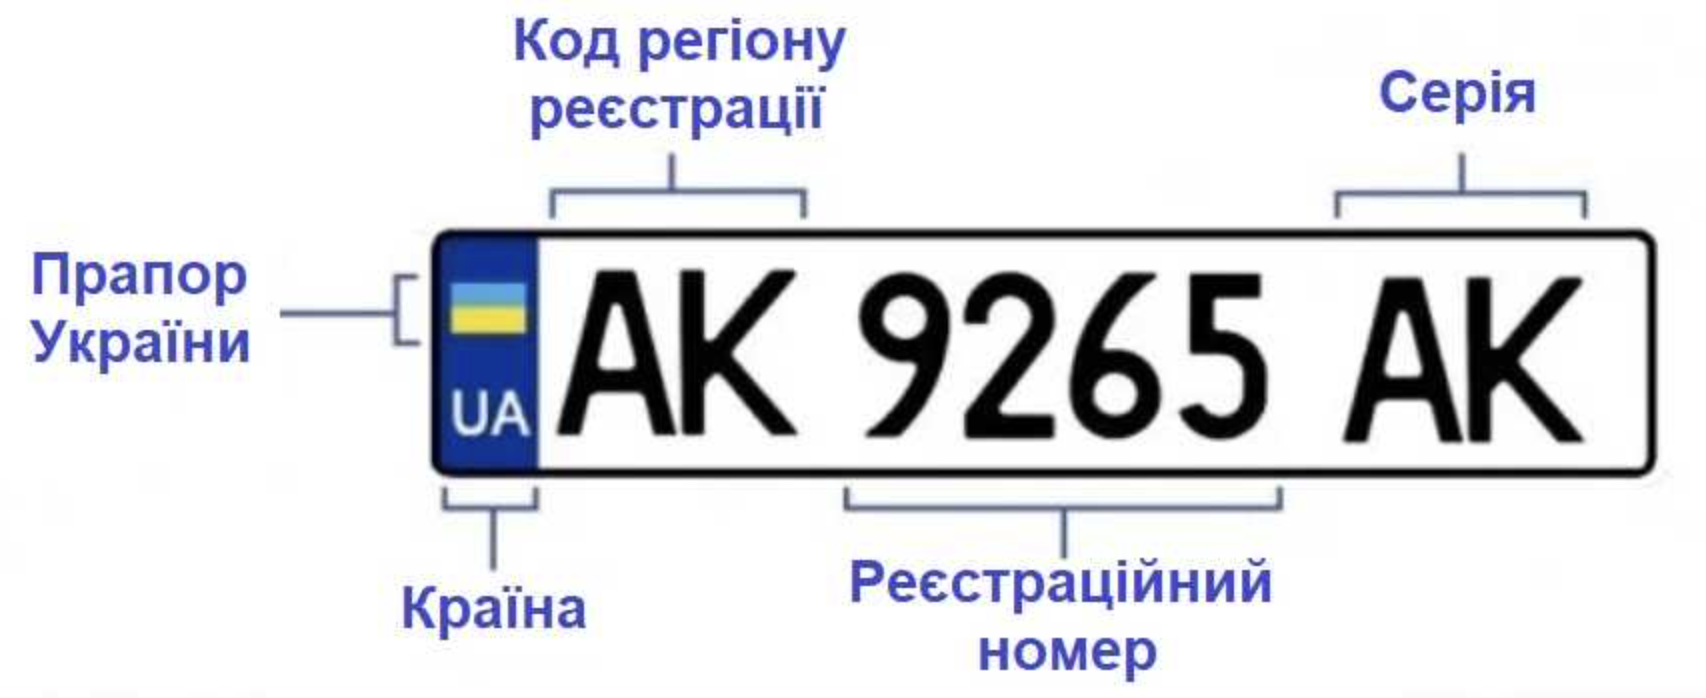 Индекс номеров украины. Обозначение автомобильных номеров Украины. Номерные знаки регионов Украины. Автомобильные номера Украины по регионам расшифровка. Номера Украины автомобильные.